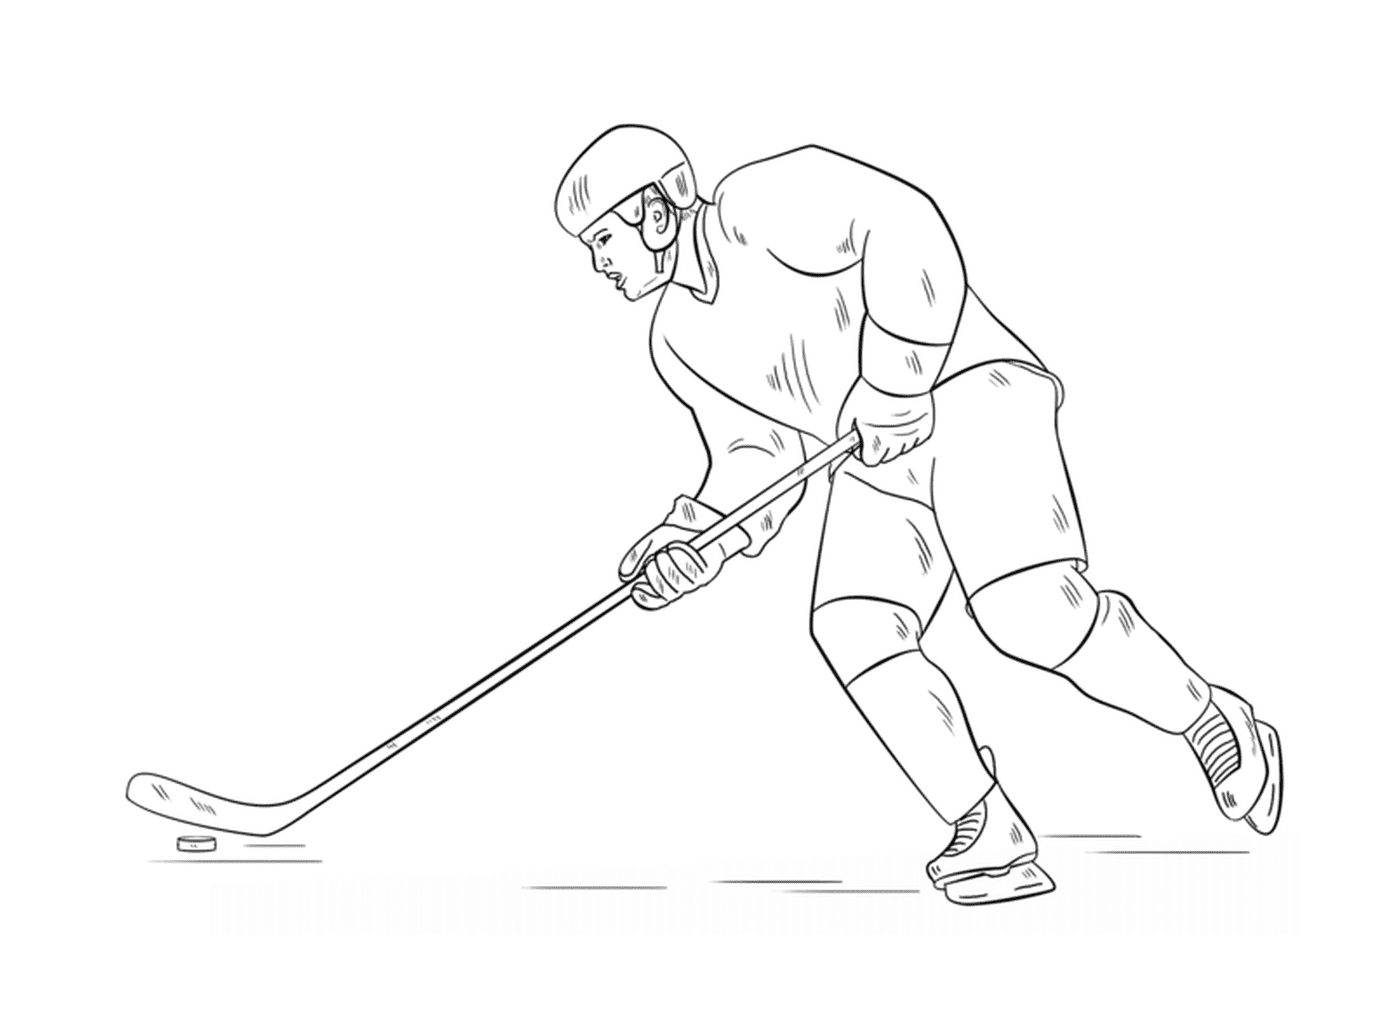  Hockey player, passionate 